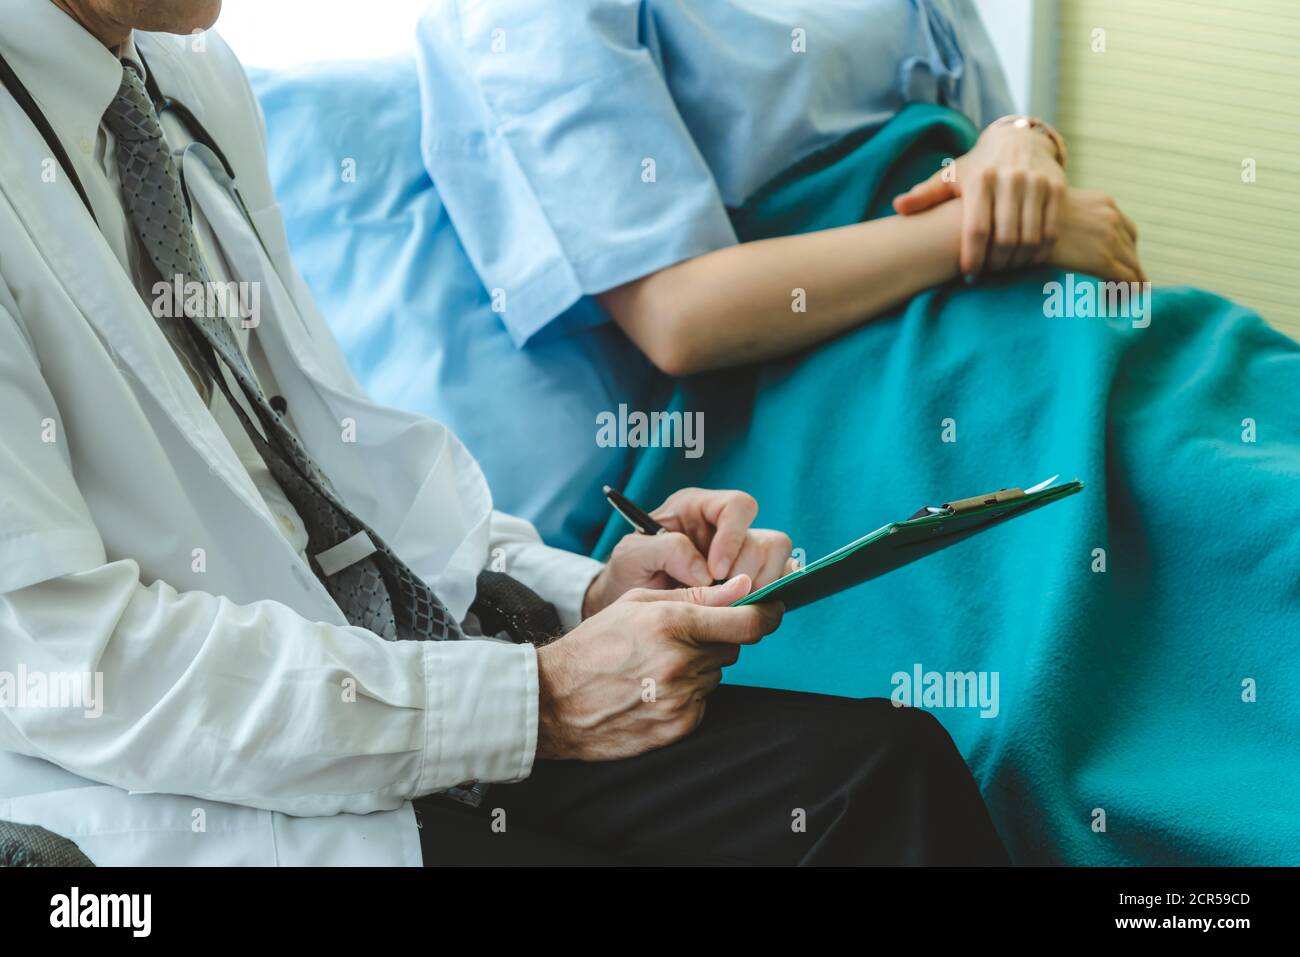 Médecin en uniforme professionnel examinant le patient à l'hôpital ou à la clinique médicale. Concept de services de soins de santé, de personnel médical et de médecin. Banque D'Images